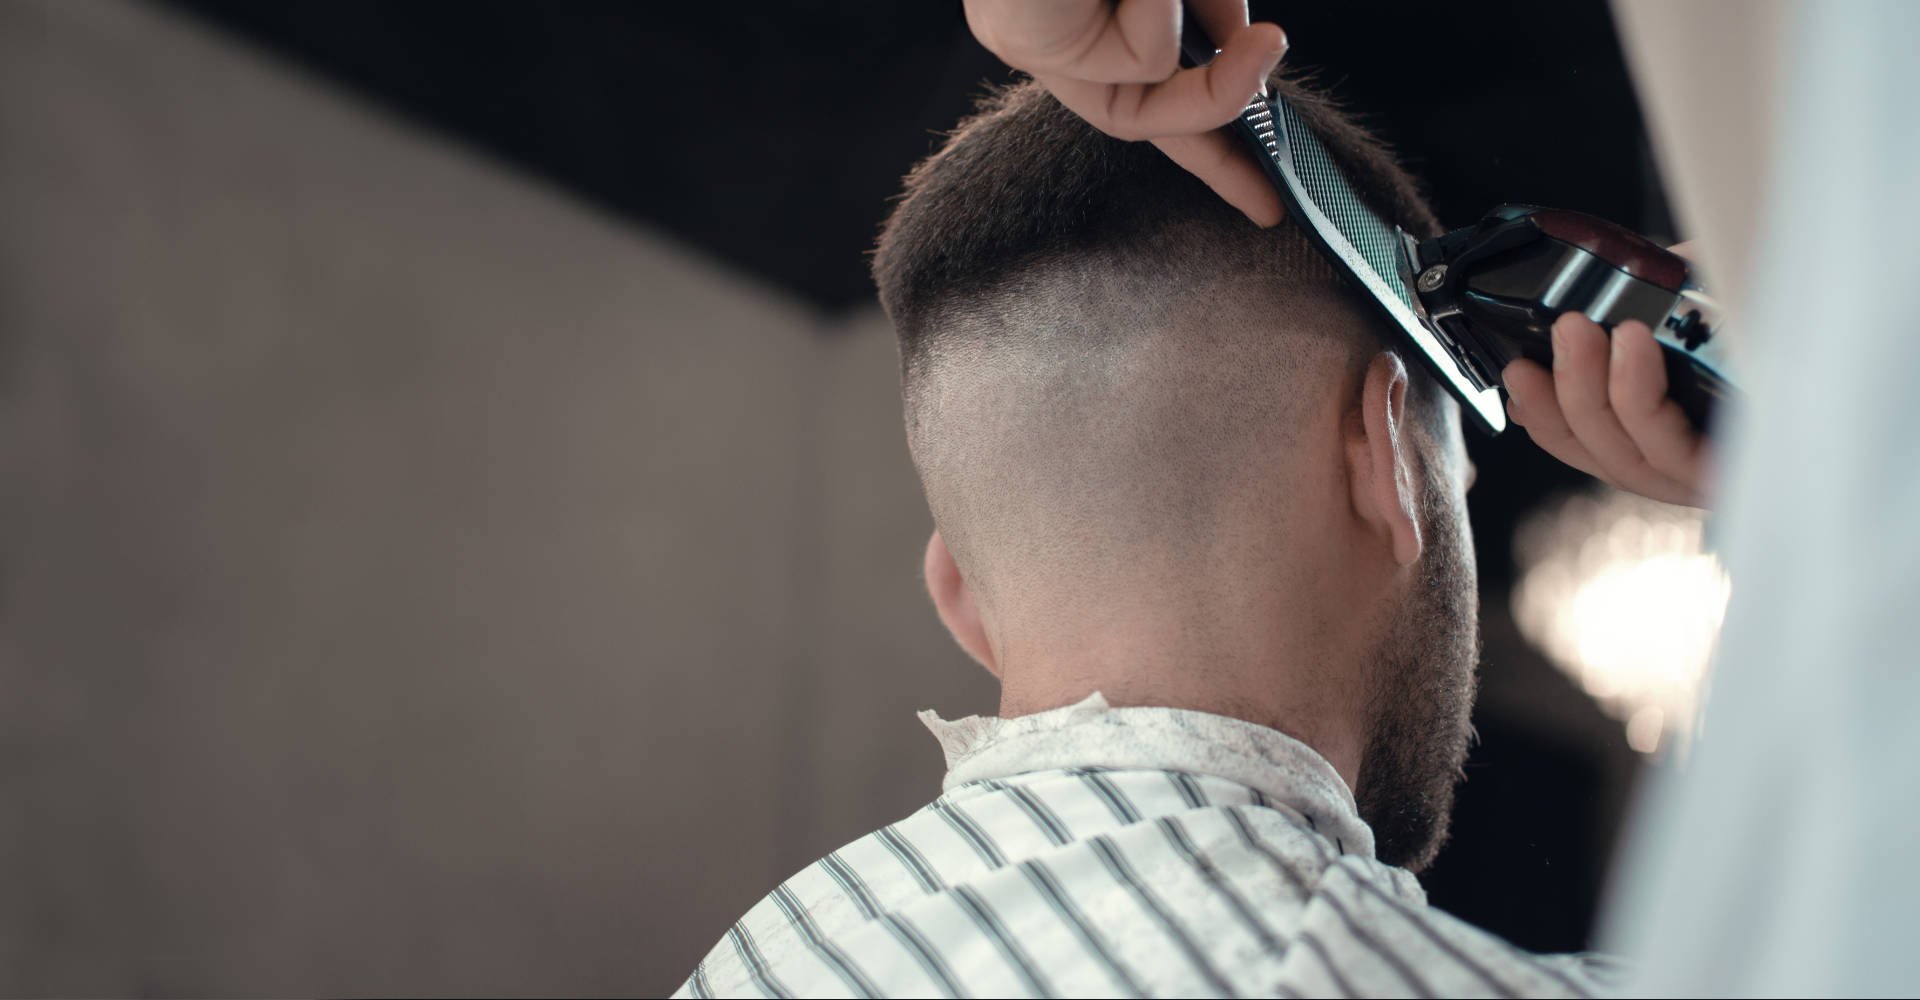 Vivacabelo - Formas diferentes de usar o degradê masculino: Corte de cabelo  com risco - O risco é uma excelente maneira de renovar seu visual e essa  mudança pode ser discreta com